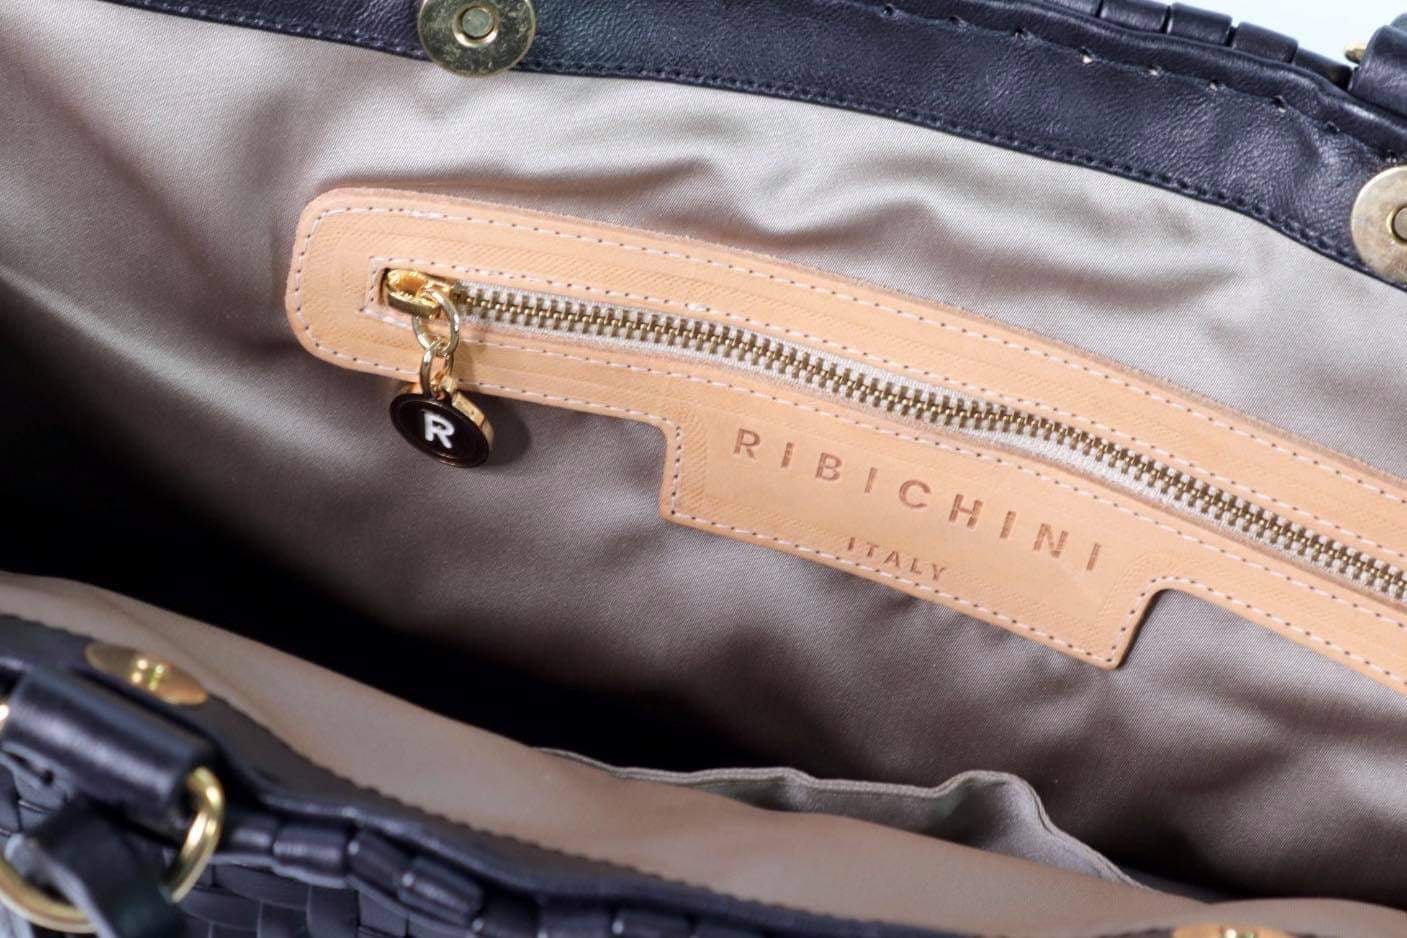 Bildet viser innsiden av en sort Ribichini Safari-veske, med en gullfarget glidelåslomme og merkets ikoniske R-logo, som kombinerer praktisk design med elegant detaljering.